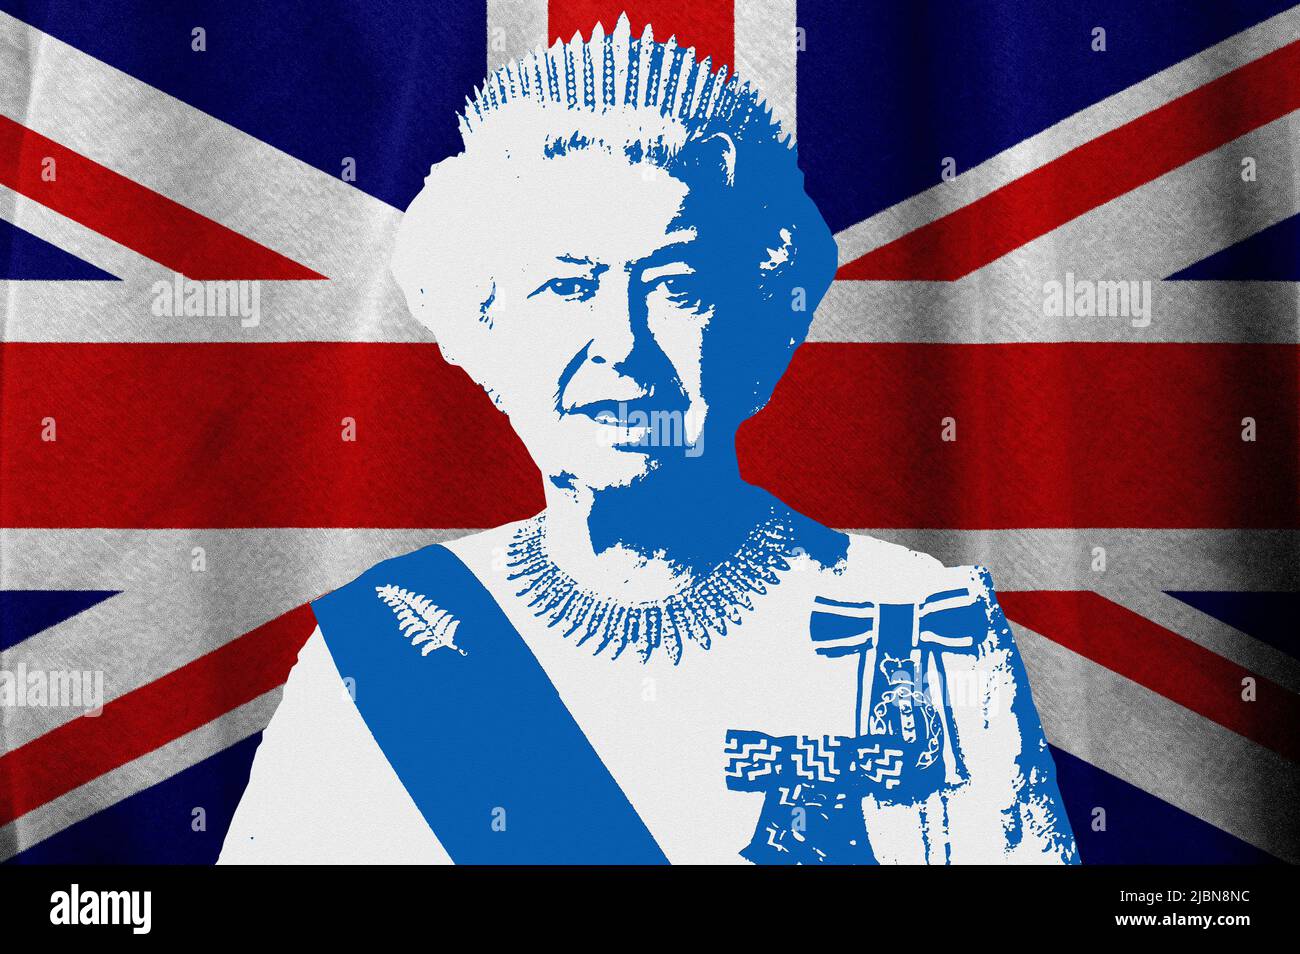 La reine Elizabeth II et le drapeau britannique Banque D'Images